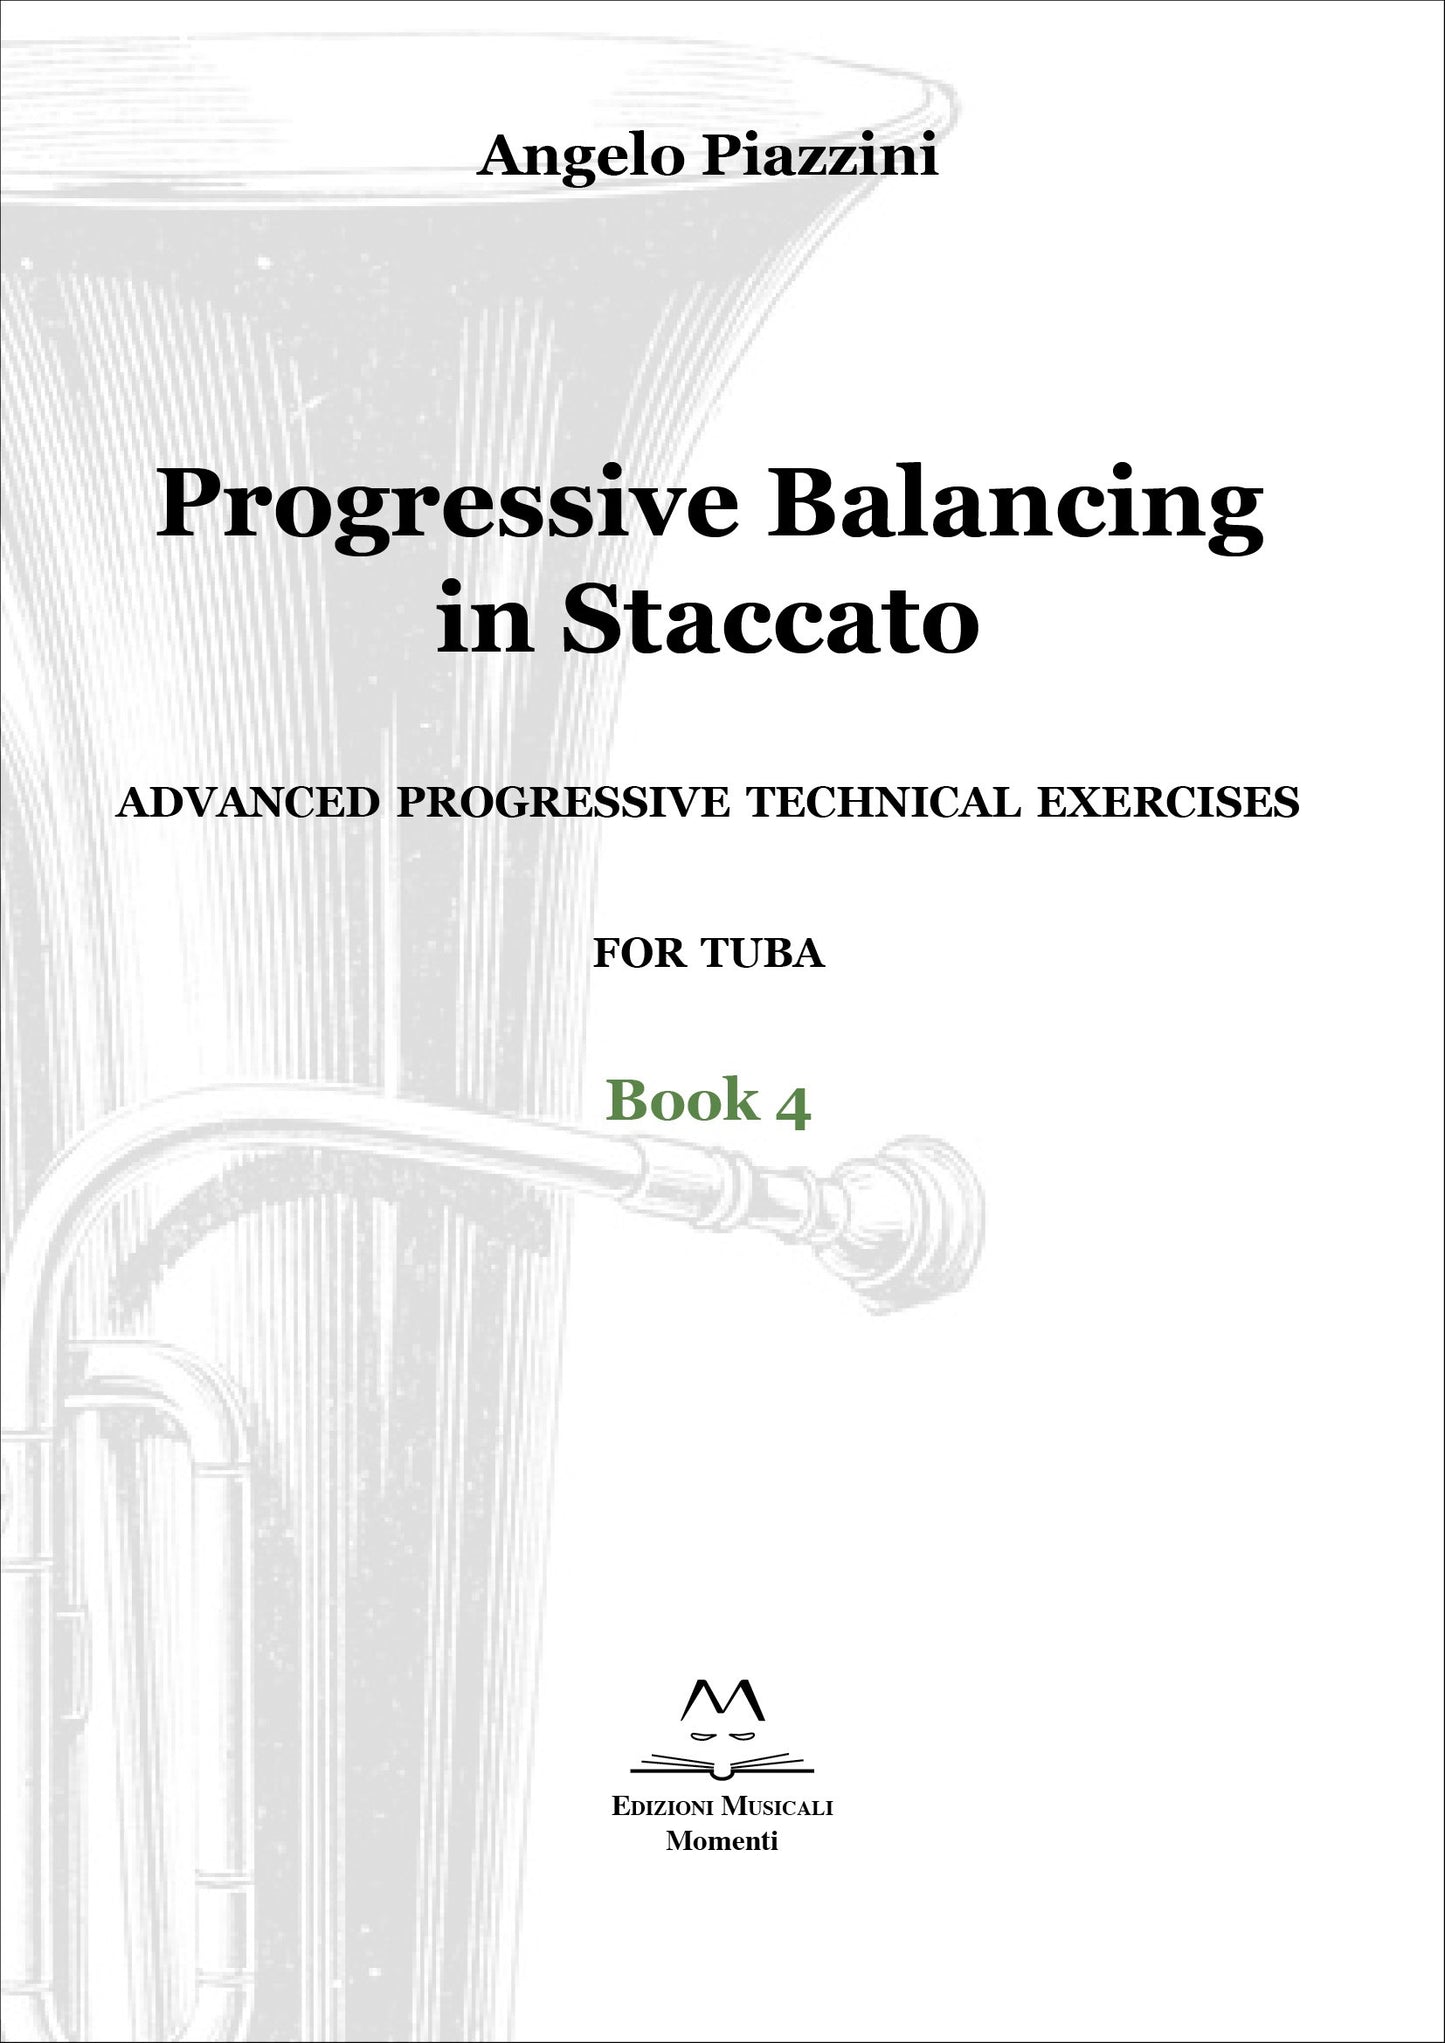 Progressive Balancing in Staccato for Tuba - Book 4 di Angelo Piazzini